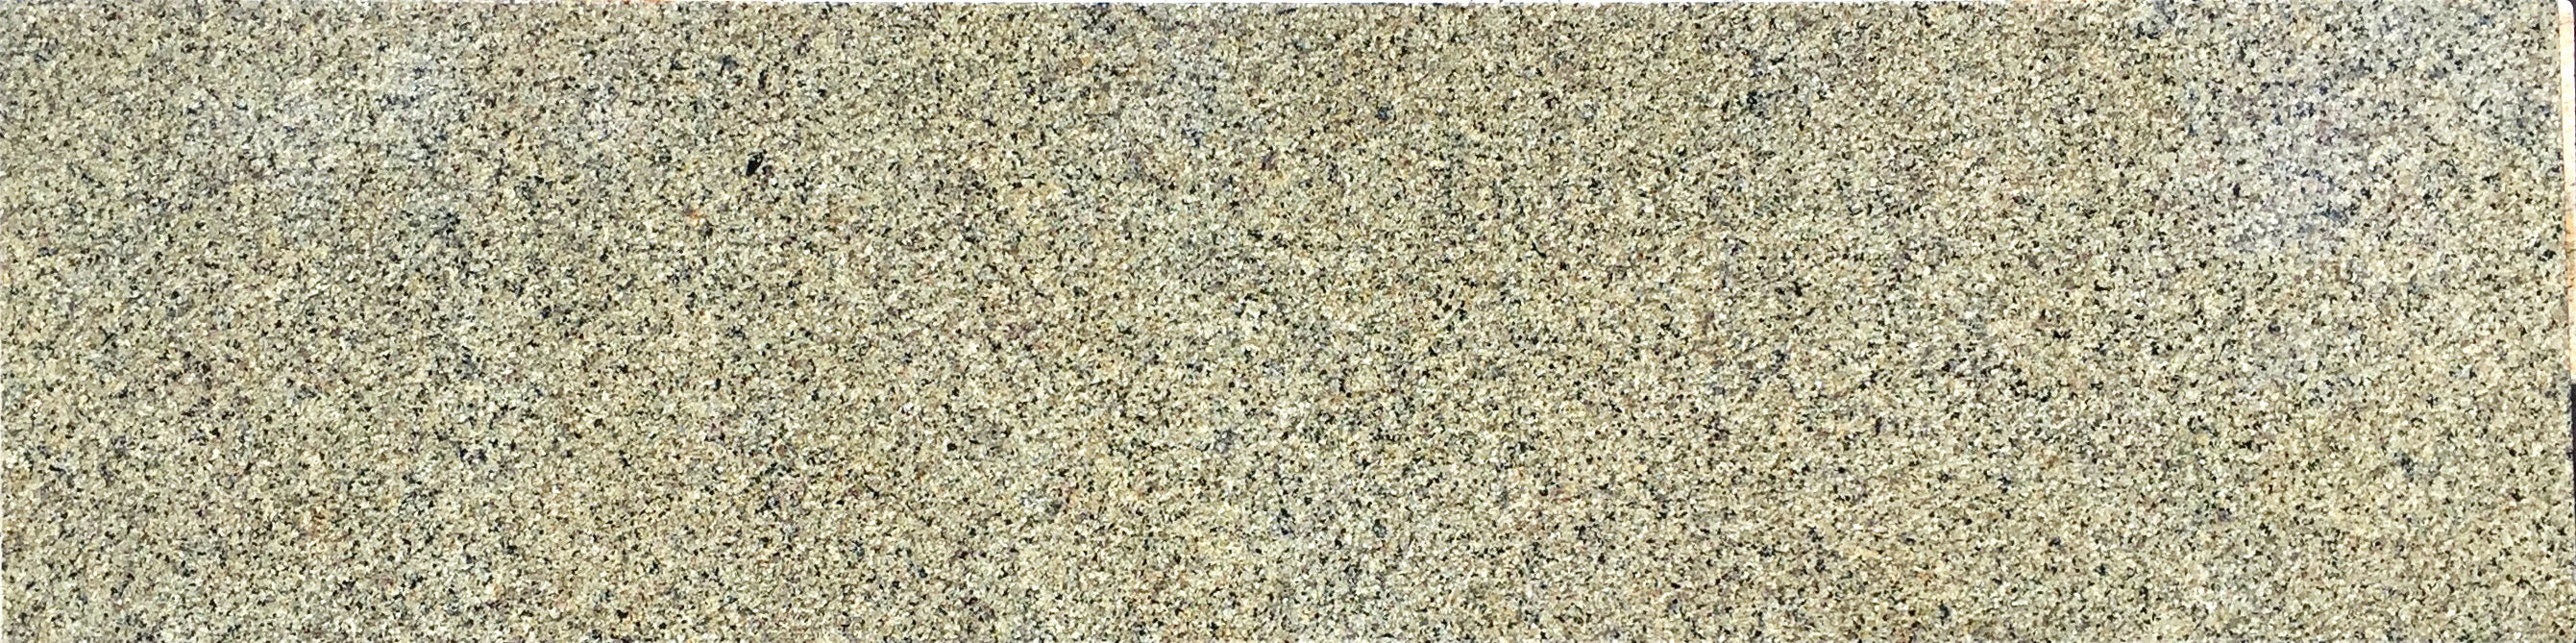 Silver Sea Green Granite Countertop